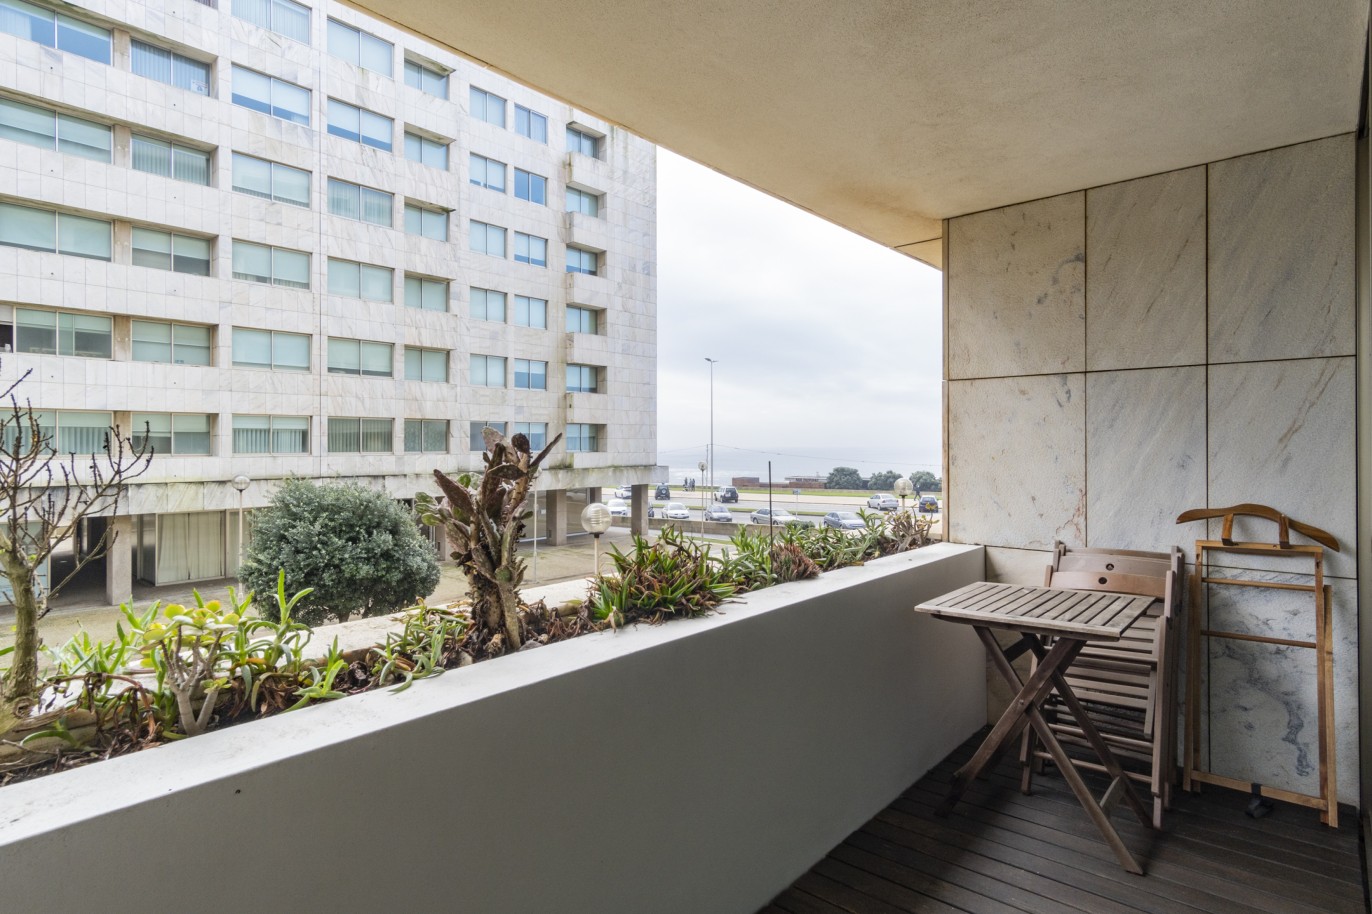 Apartment with balcony, to rent, 1st line of sea, Leça da Palmeira, Porto, Portugal_214273